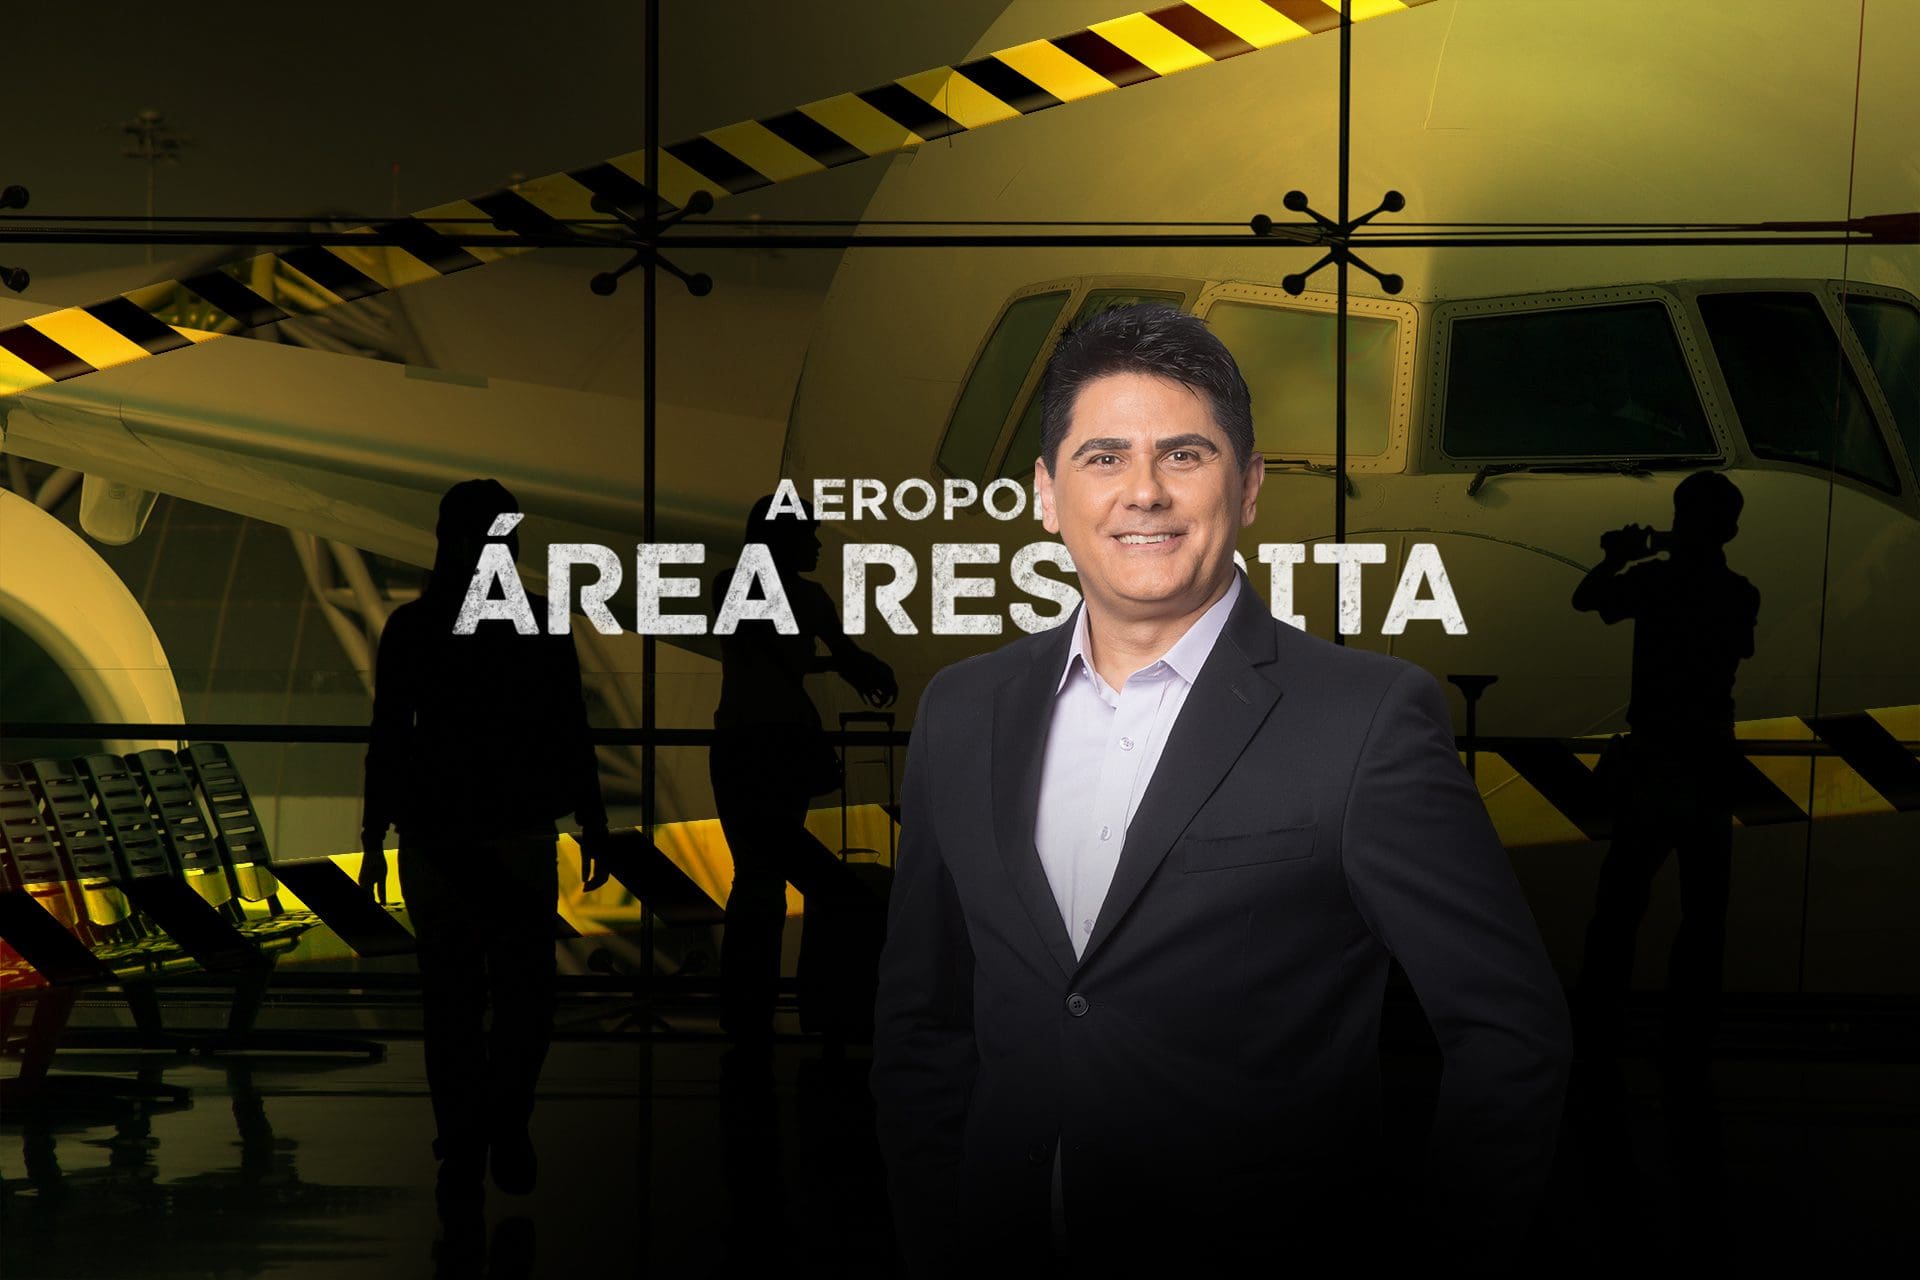 Aeroporto - Área Restrita: data da 5ª temporada e onde assistir